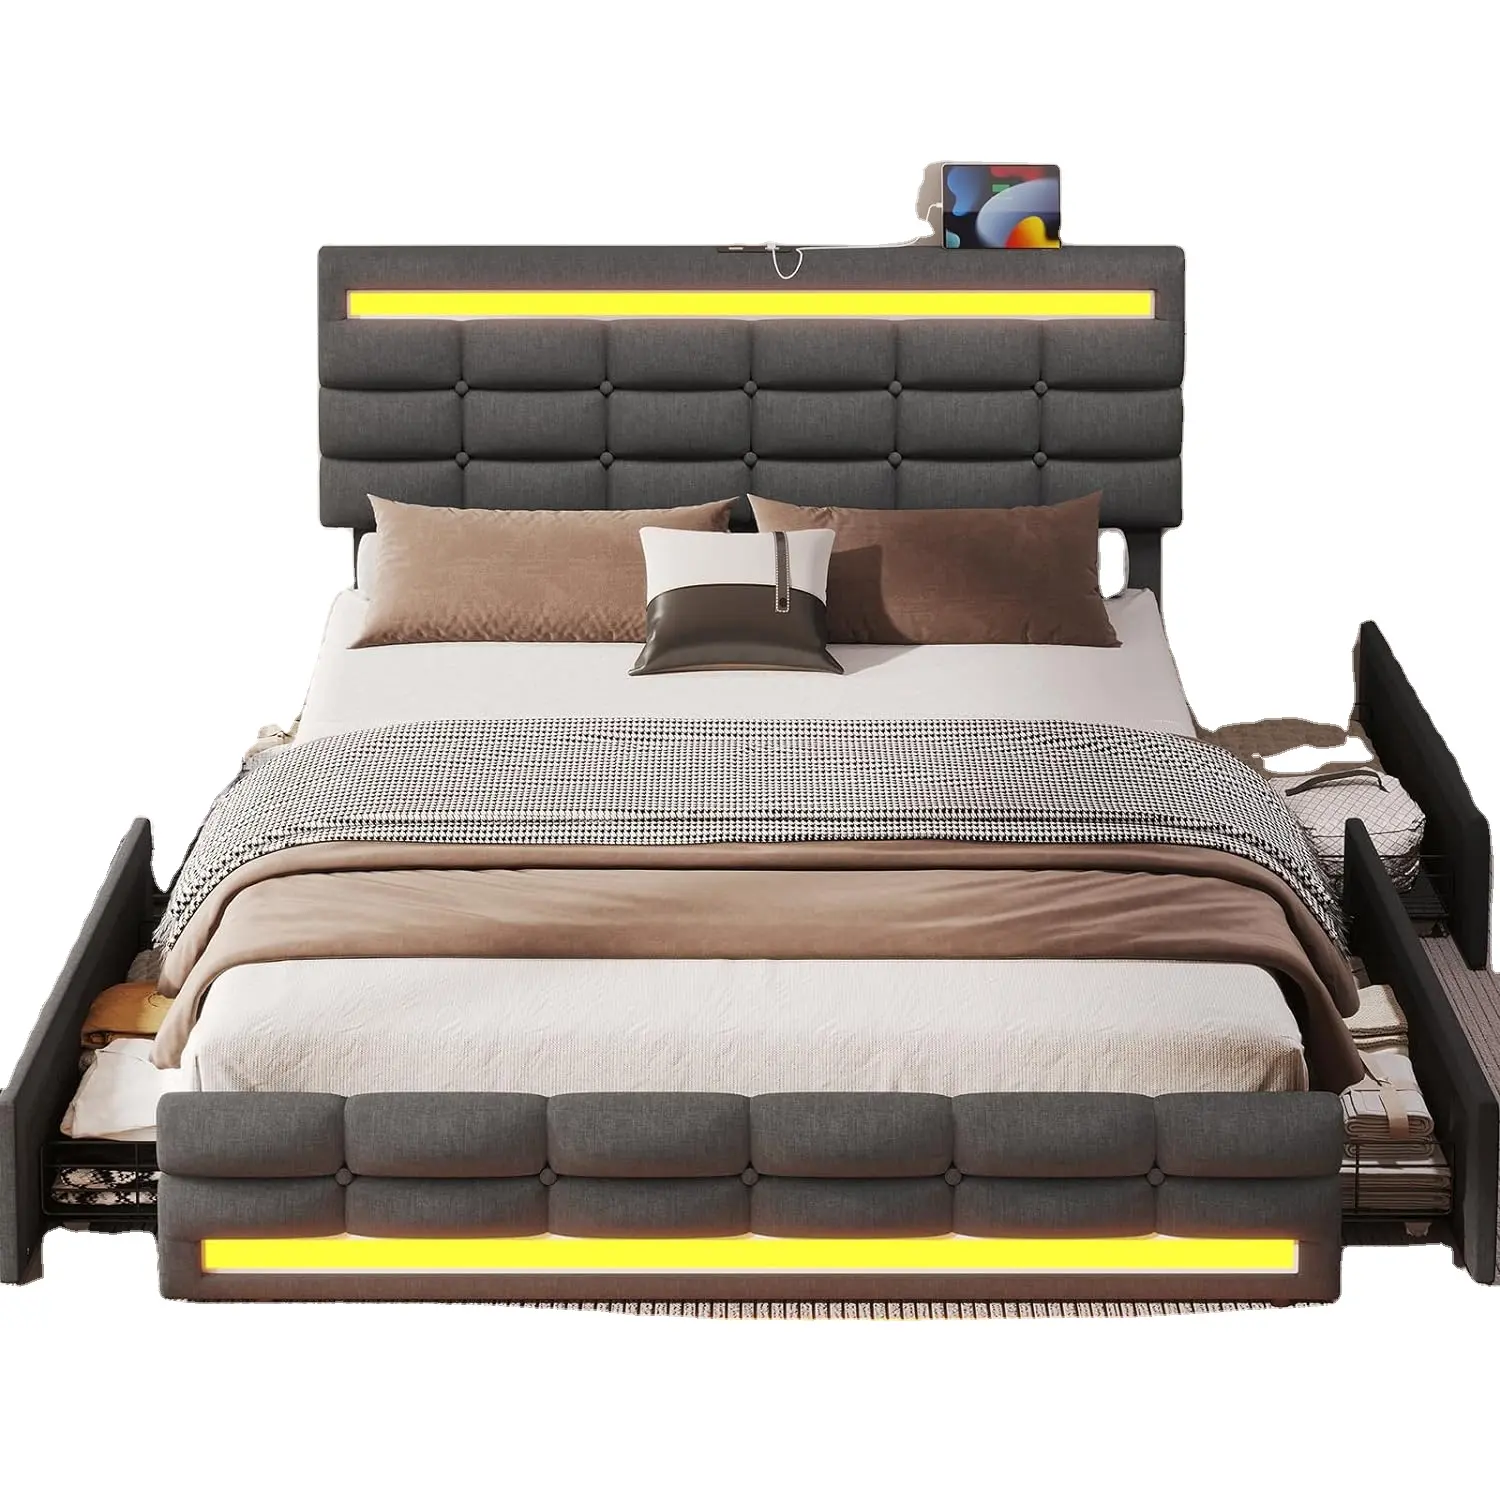 4 개의 서랍과 2 개의 USB 충전소가 있는 퀸 LED 침대 프레임, 덮개를 씌운 플랫폼 퀸 사이즈 침대 프레임